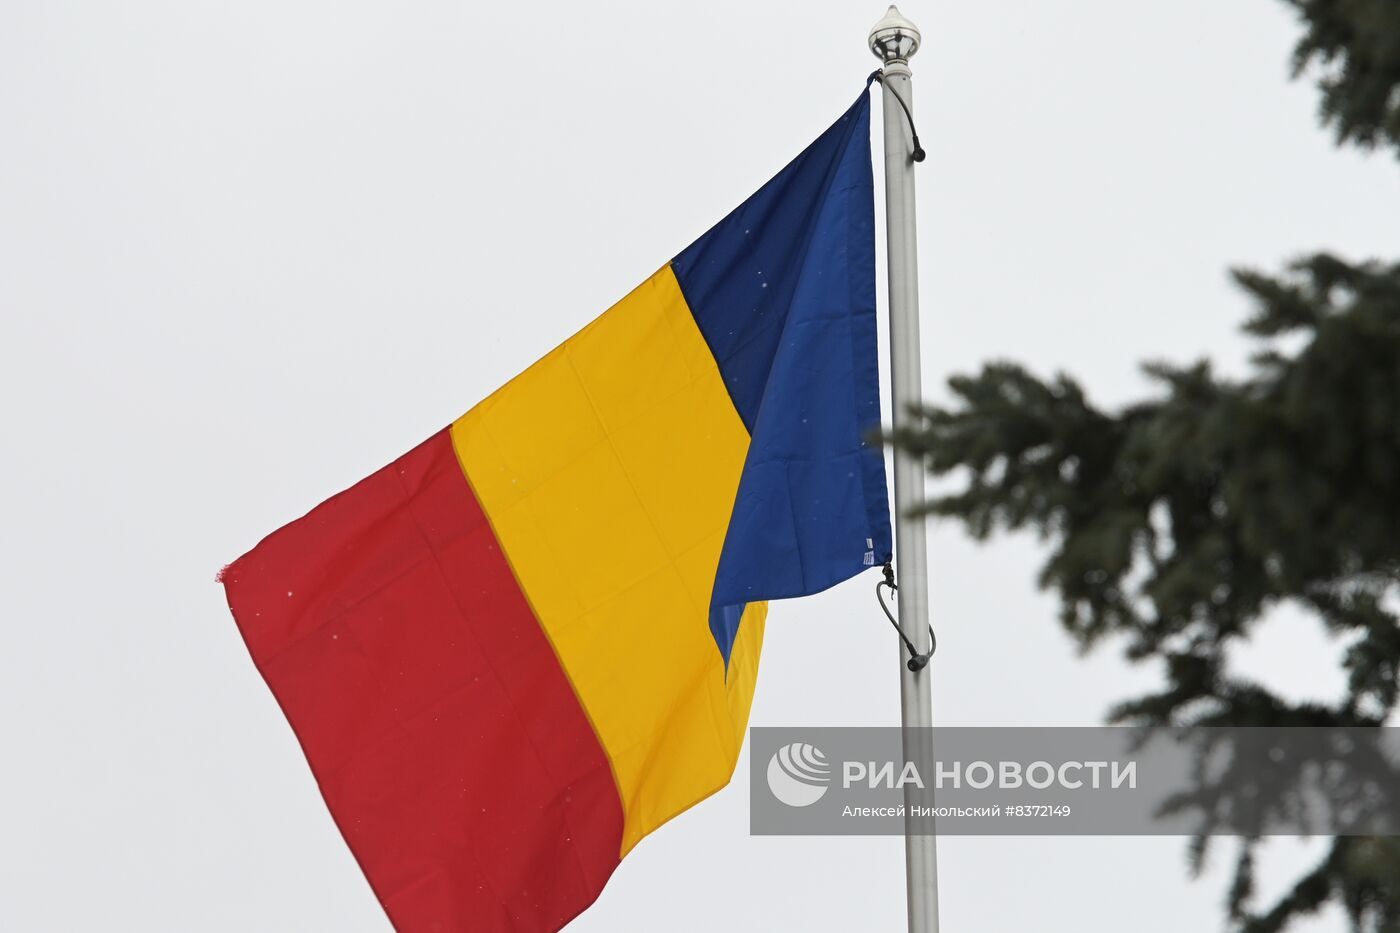 وسائل إعلام: رومانيا تنشر قوات إضافية على الحدود مع أوكرانيا